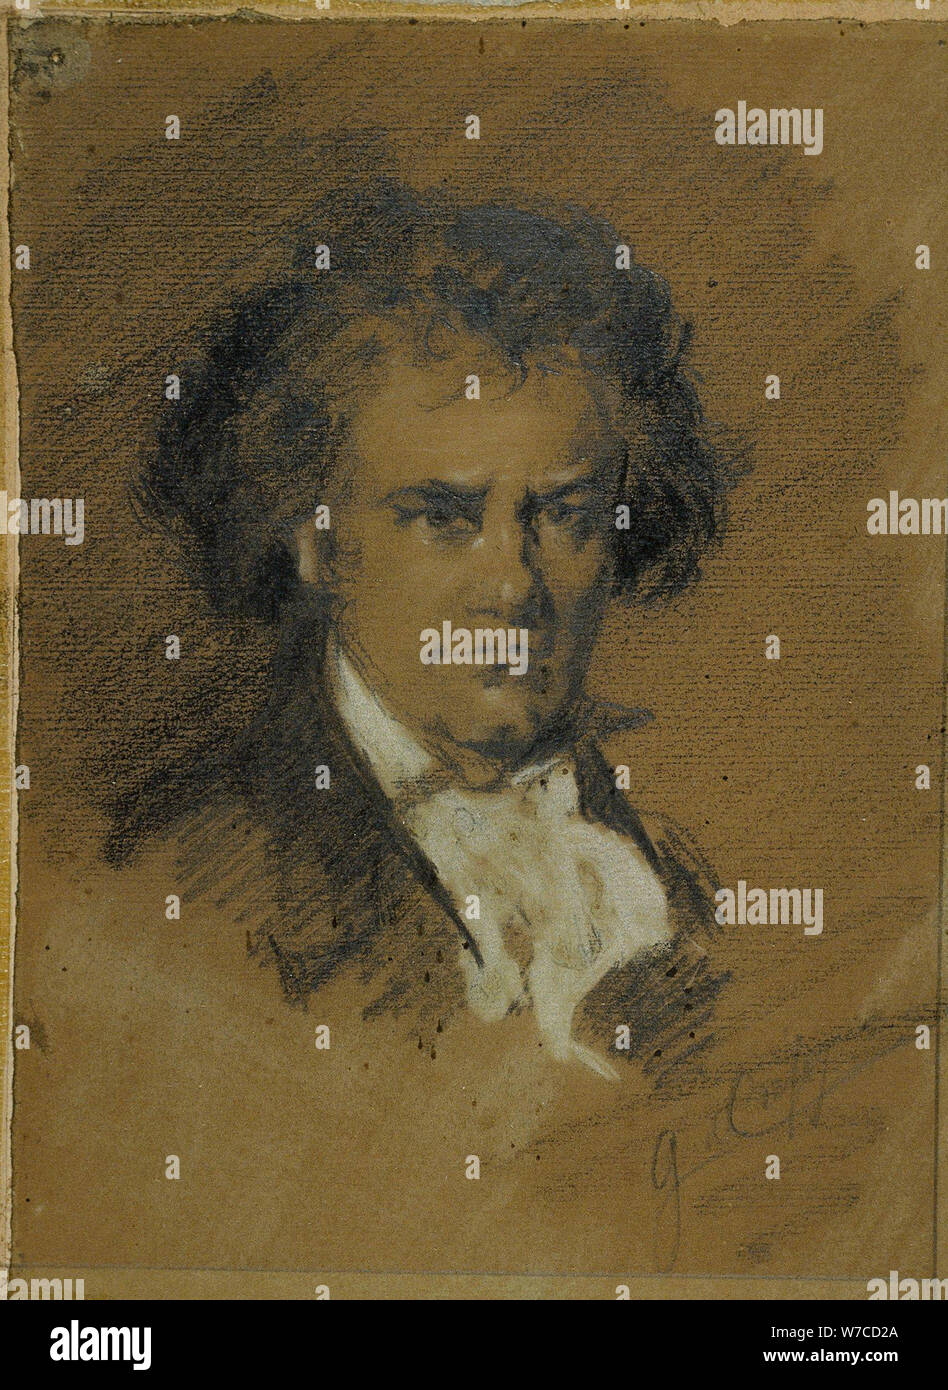 Portrait of Ludwig van Beethoven (1770-1827). Stock Photo